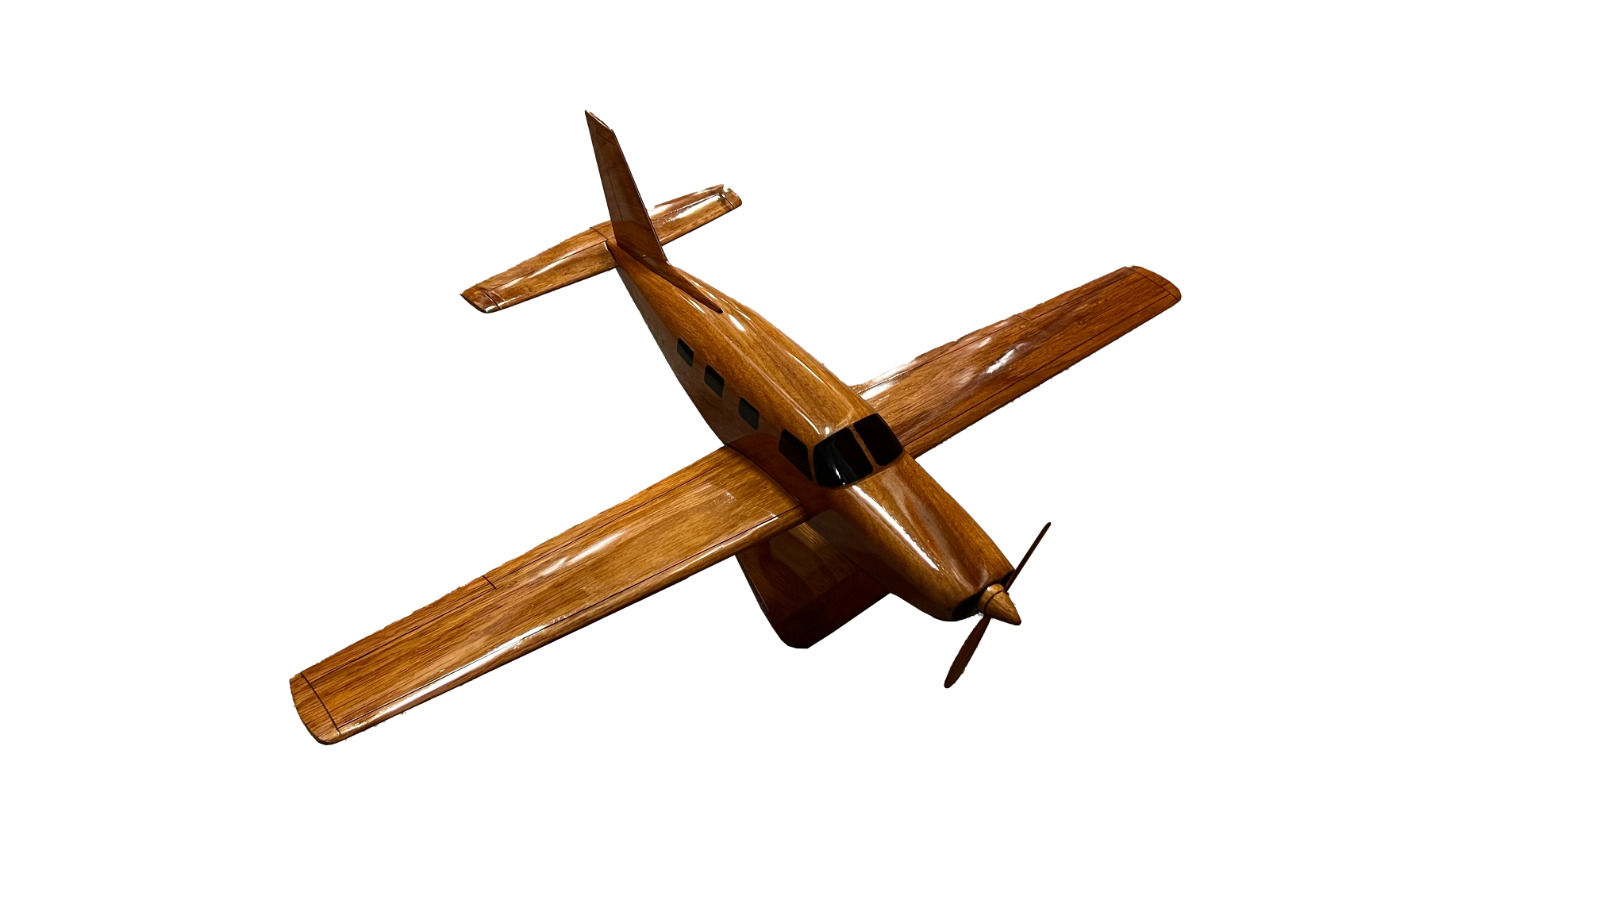 Piper Navajo Mahogany wood Airplane model